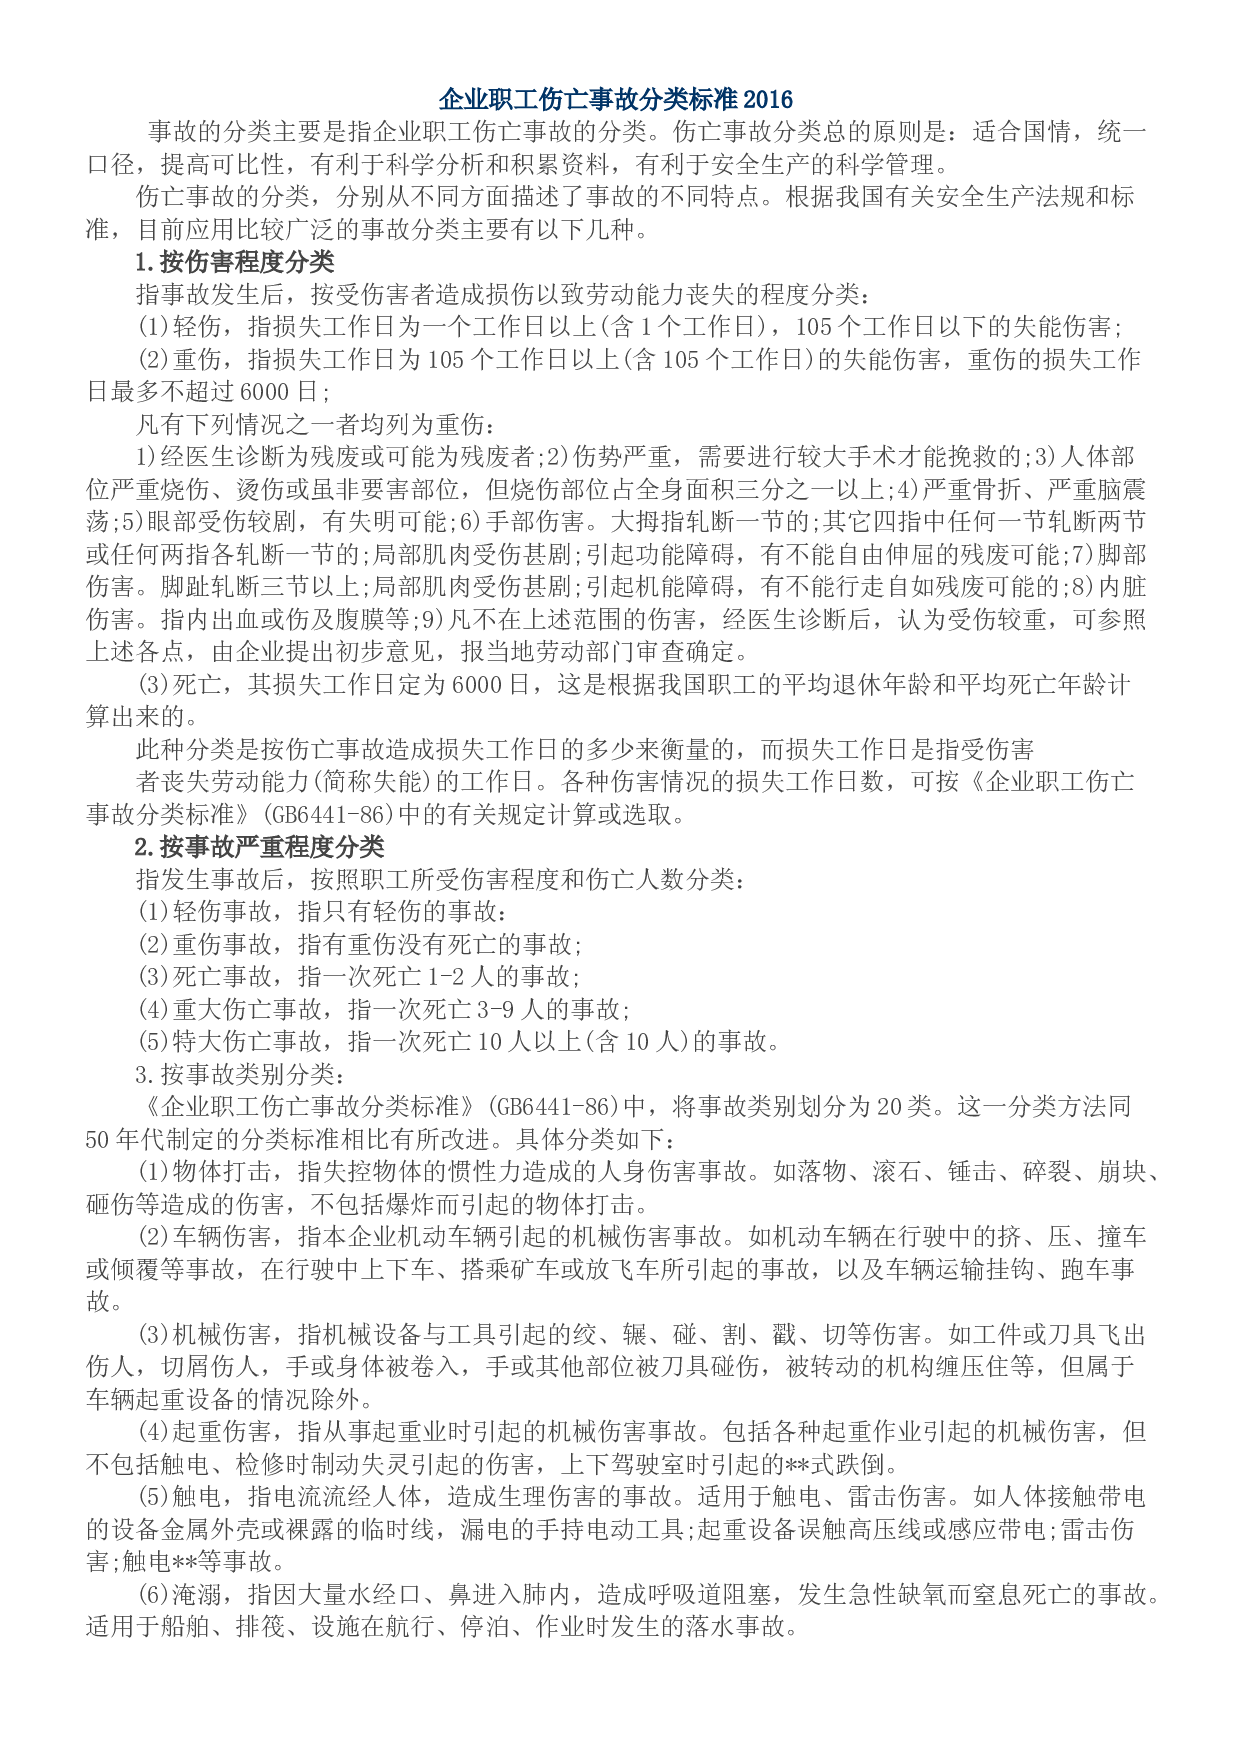 每经记者直击上海石化火灾现场 公司昨天刚纪念成立50周年_事故_进行_区域